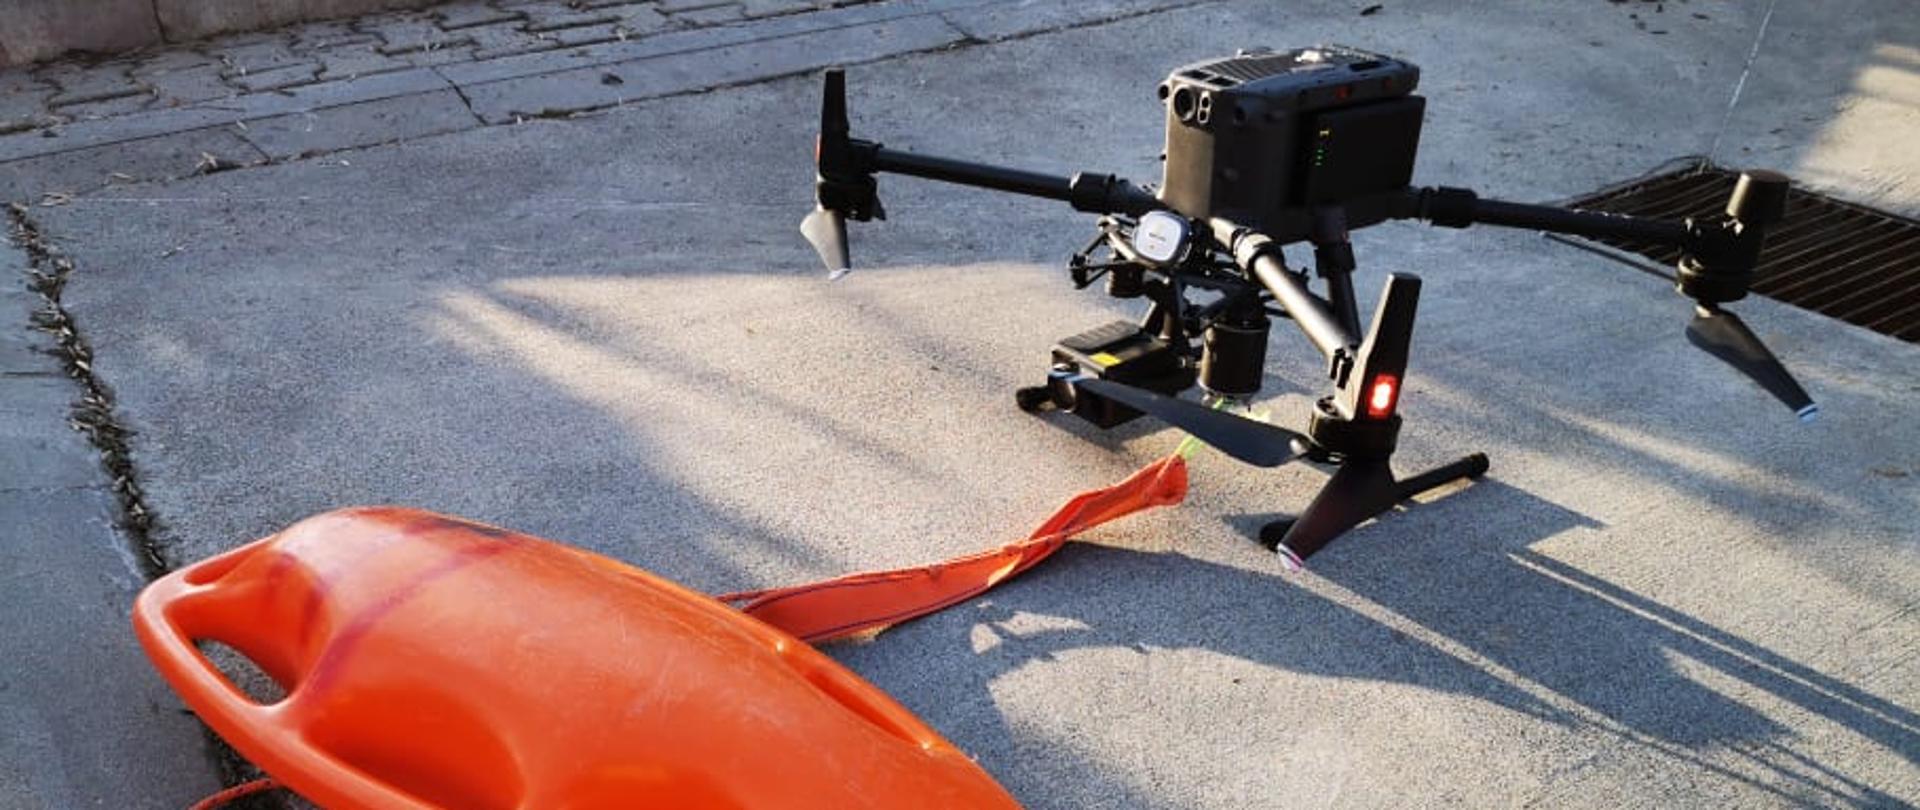 Na zdjęciu widoczny bezzałogowy wielowirnikowy statek powietrzny (dron), do którego linką przywiązana jest plastikowa boja ratownicza używana przez ratowników do podawania jej tonącym. Zestaw stoi na betonowym placu i jest przygotowywany do lotu.